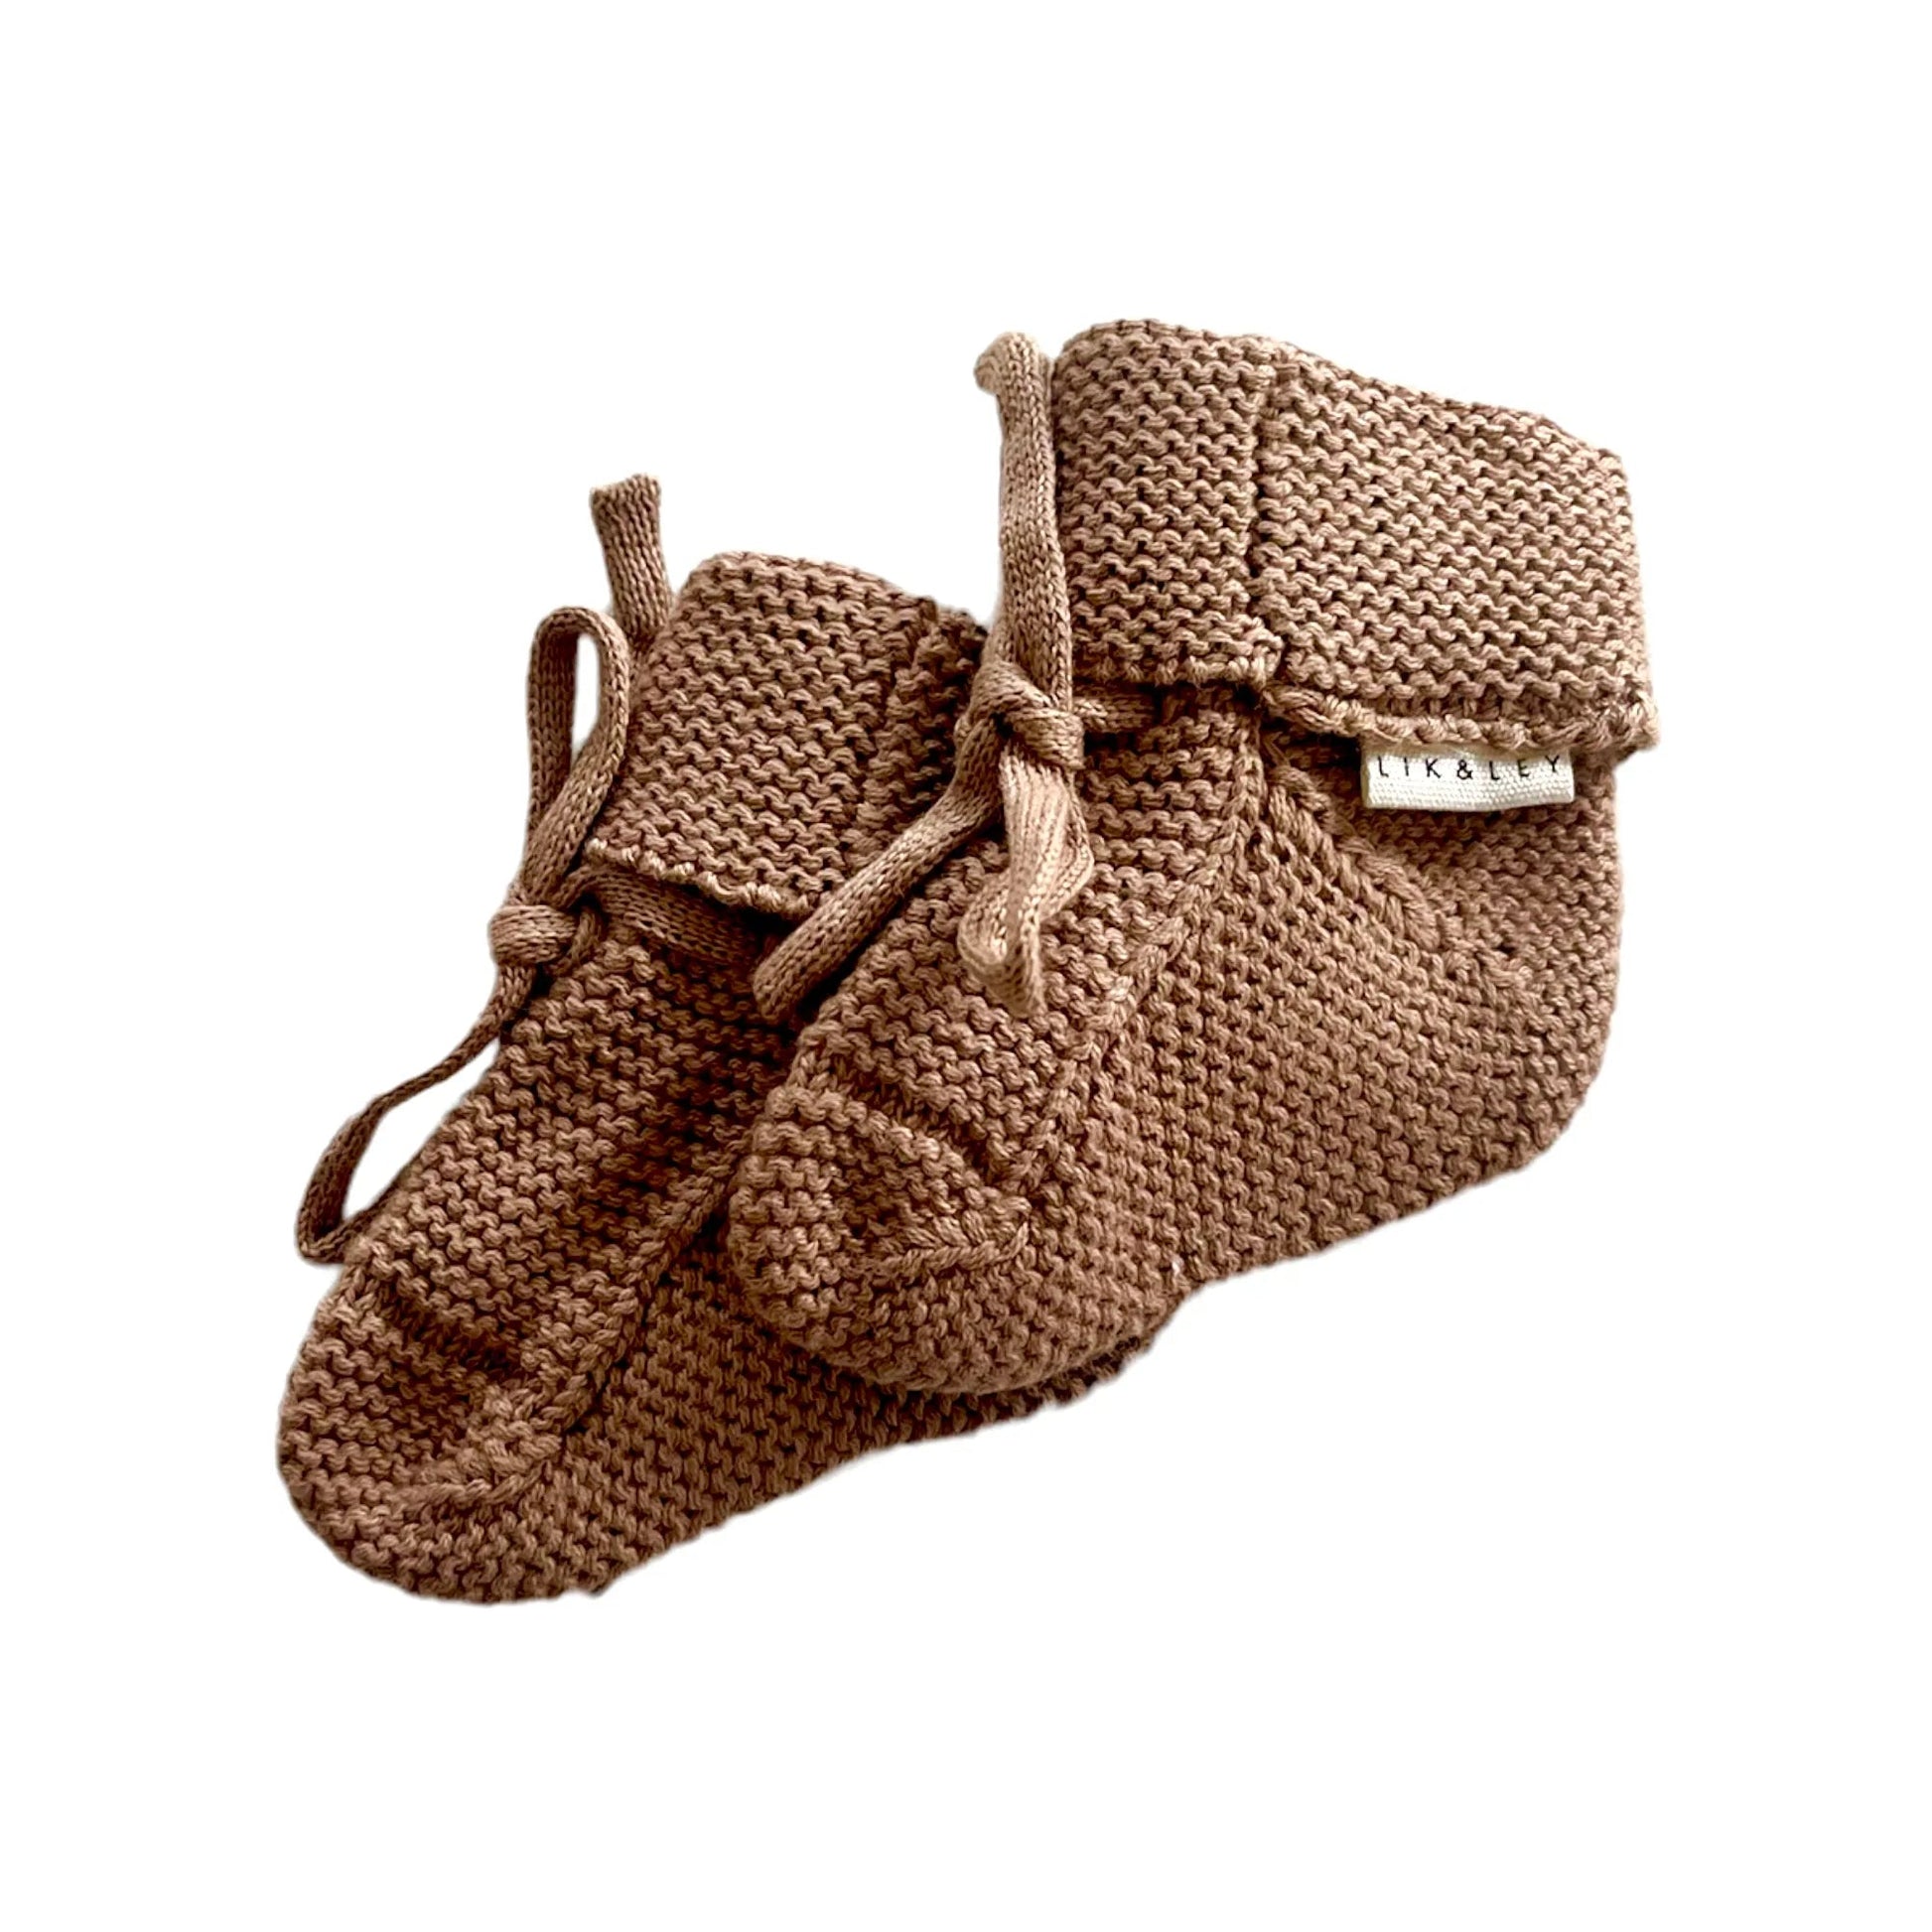 KNIT Shoes aus Bio- Baumwolle - Siliblu Boutique & Atelier